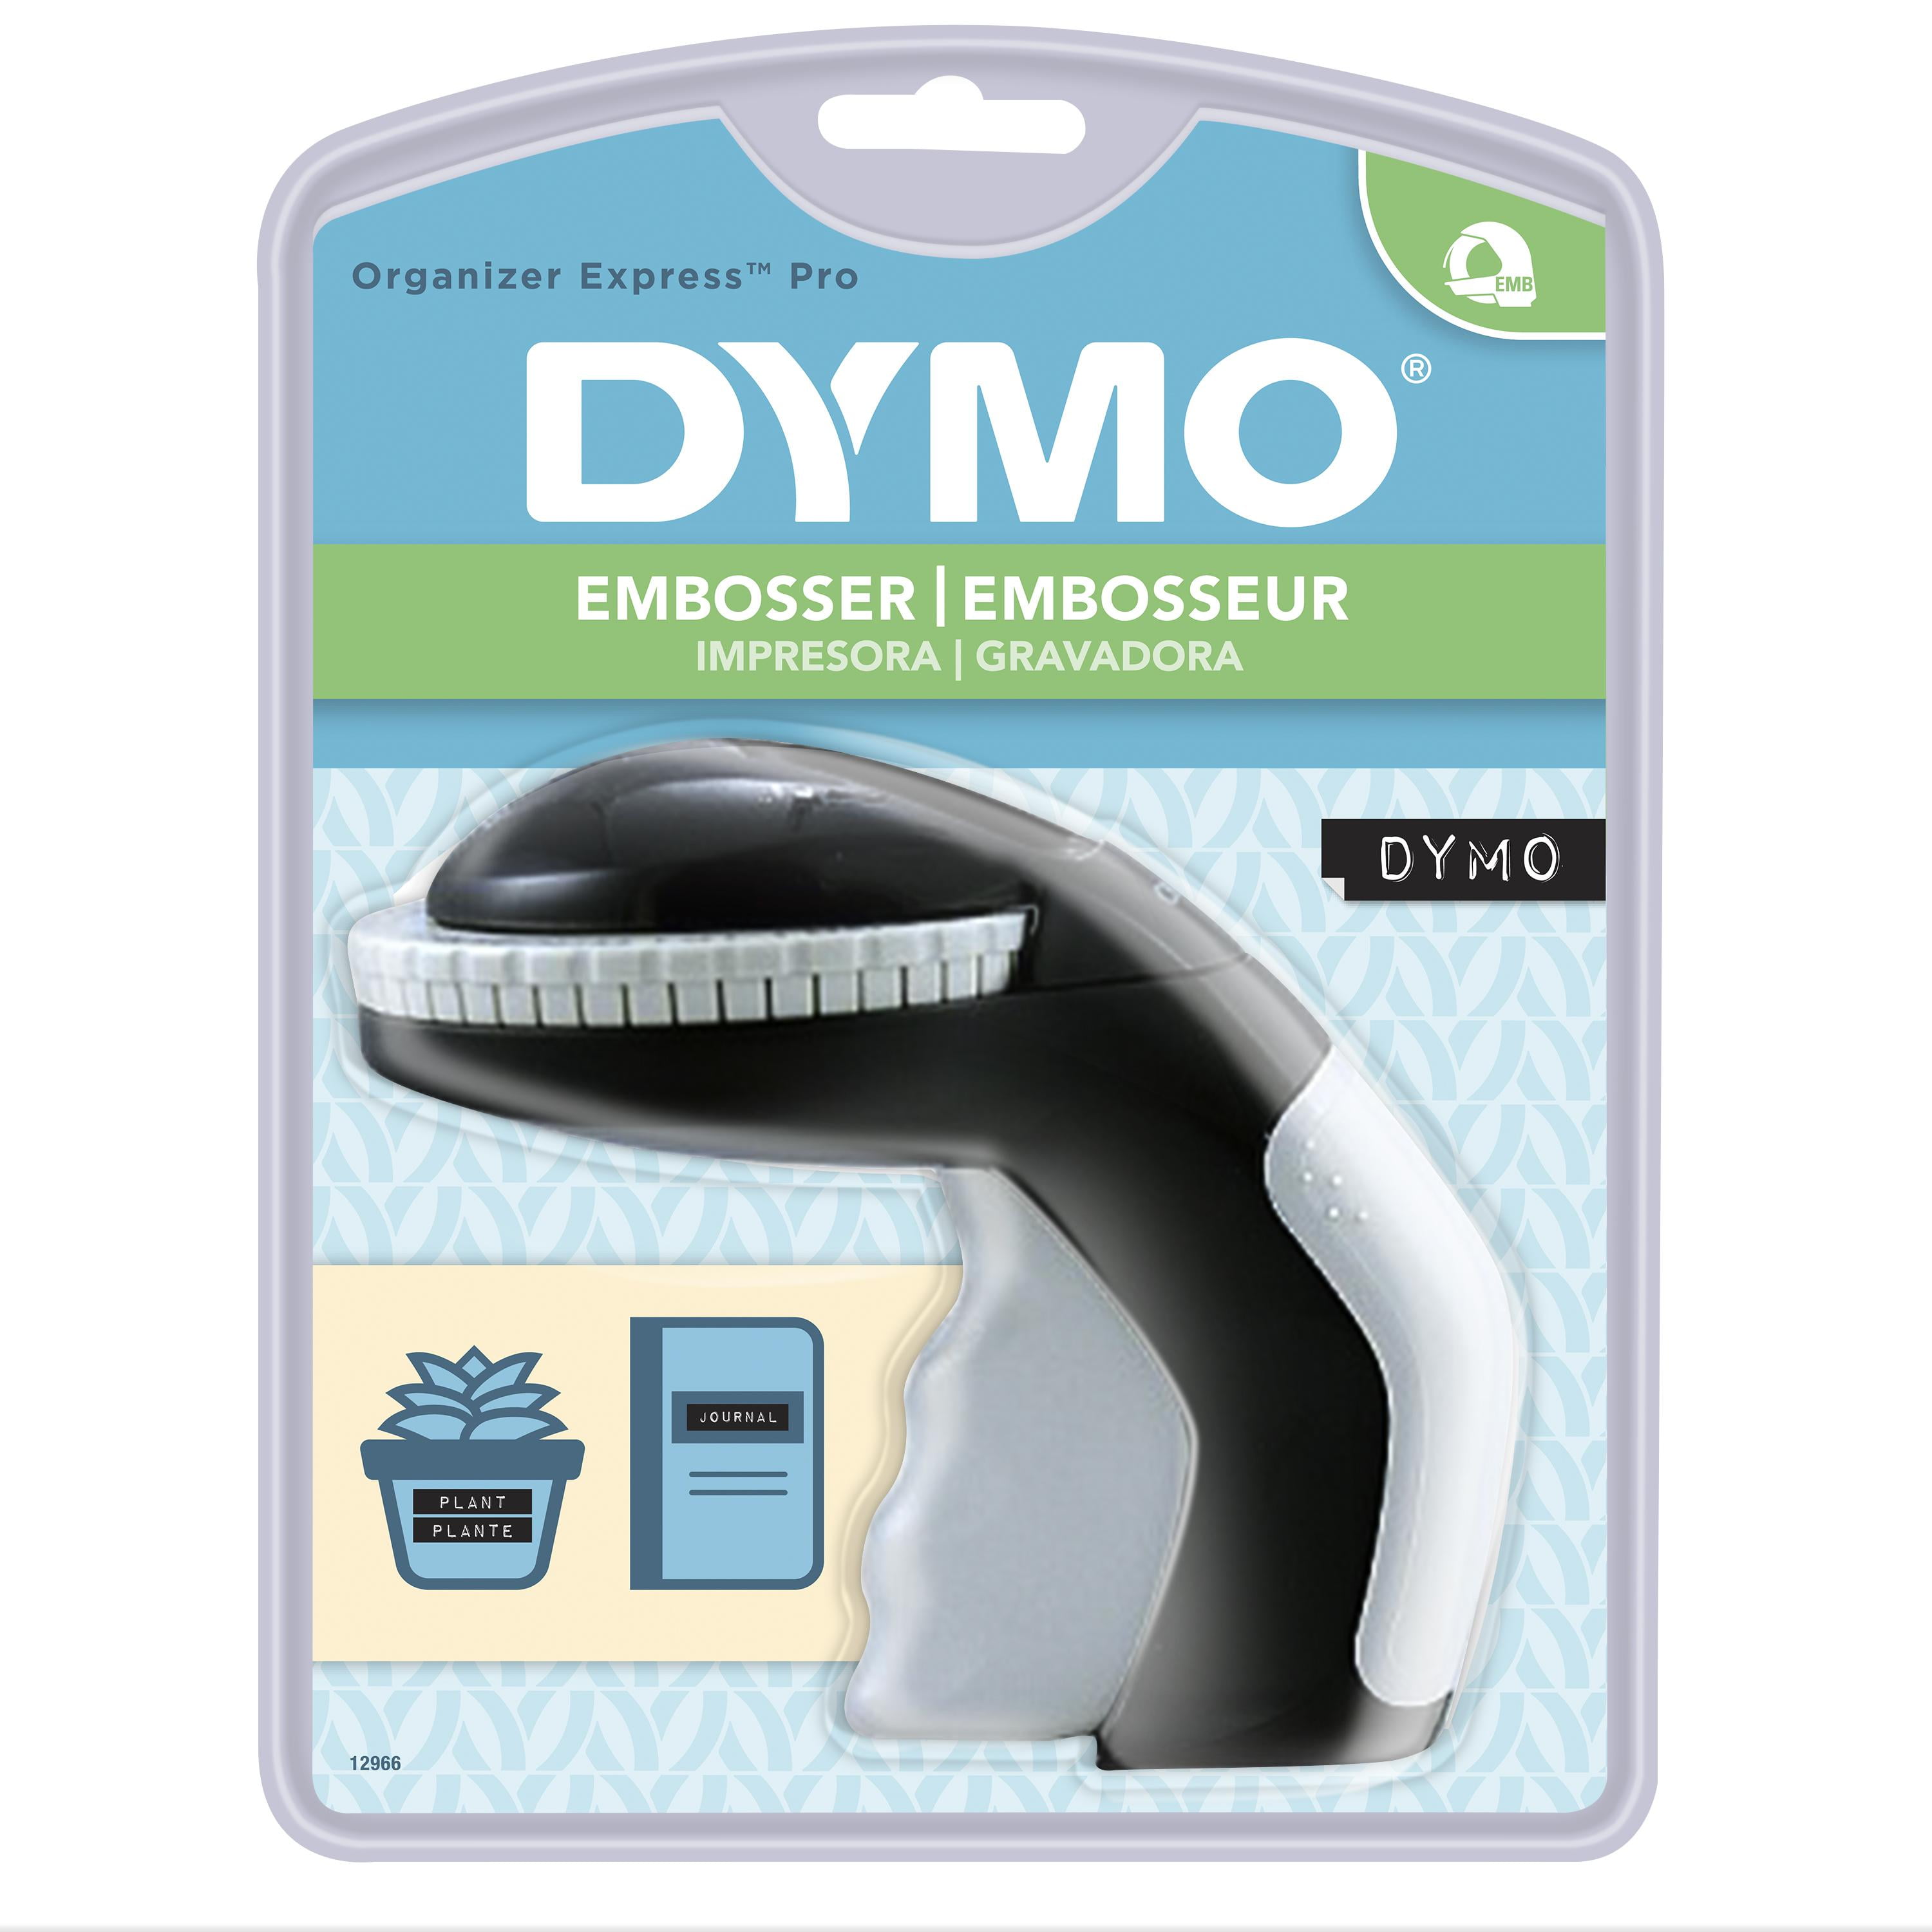 Dymo Embosser Tape Home Embossing Label Maker Machine Office Labeling 